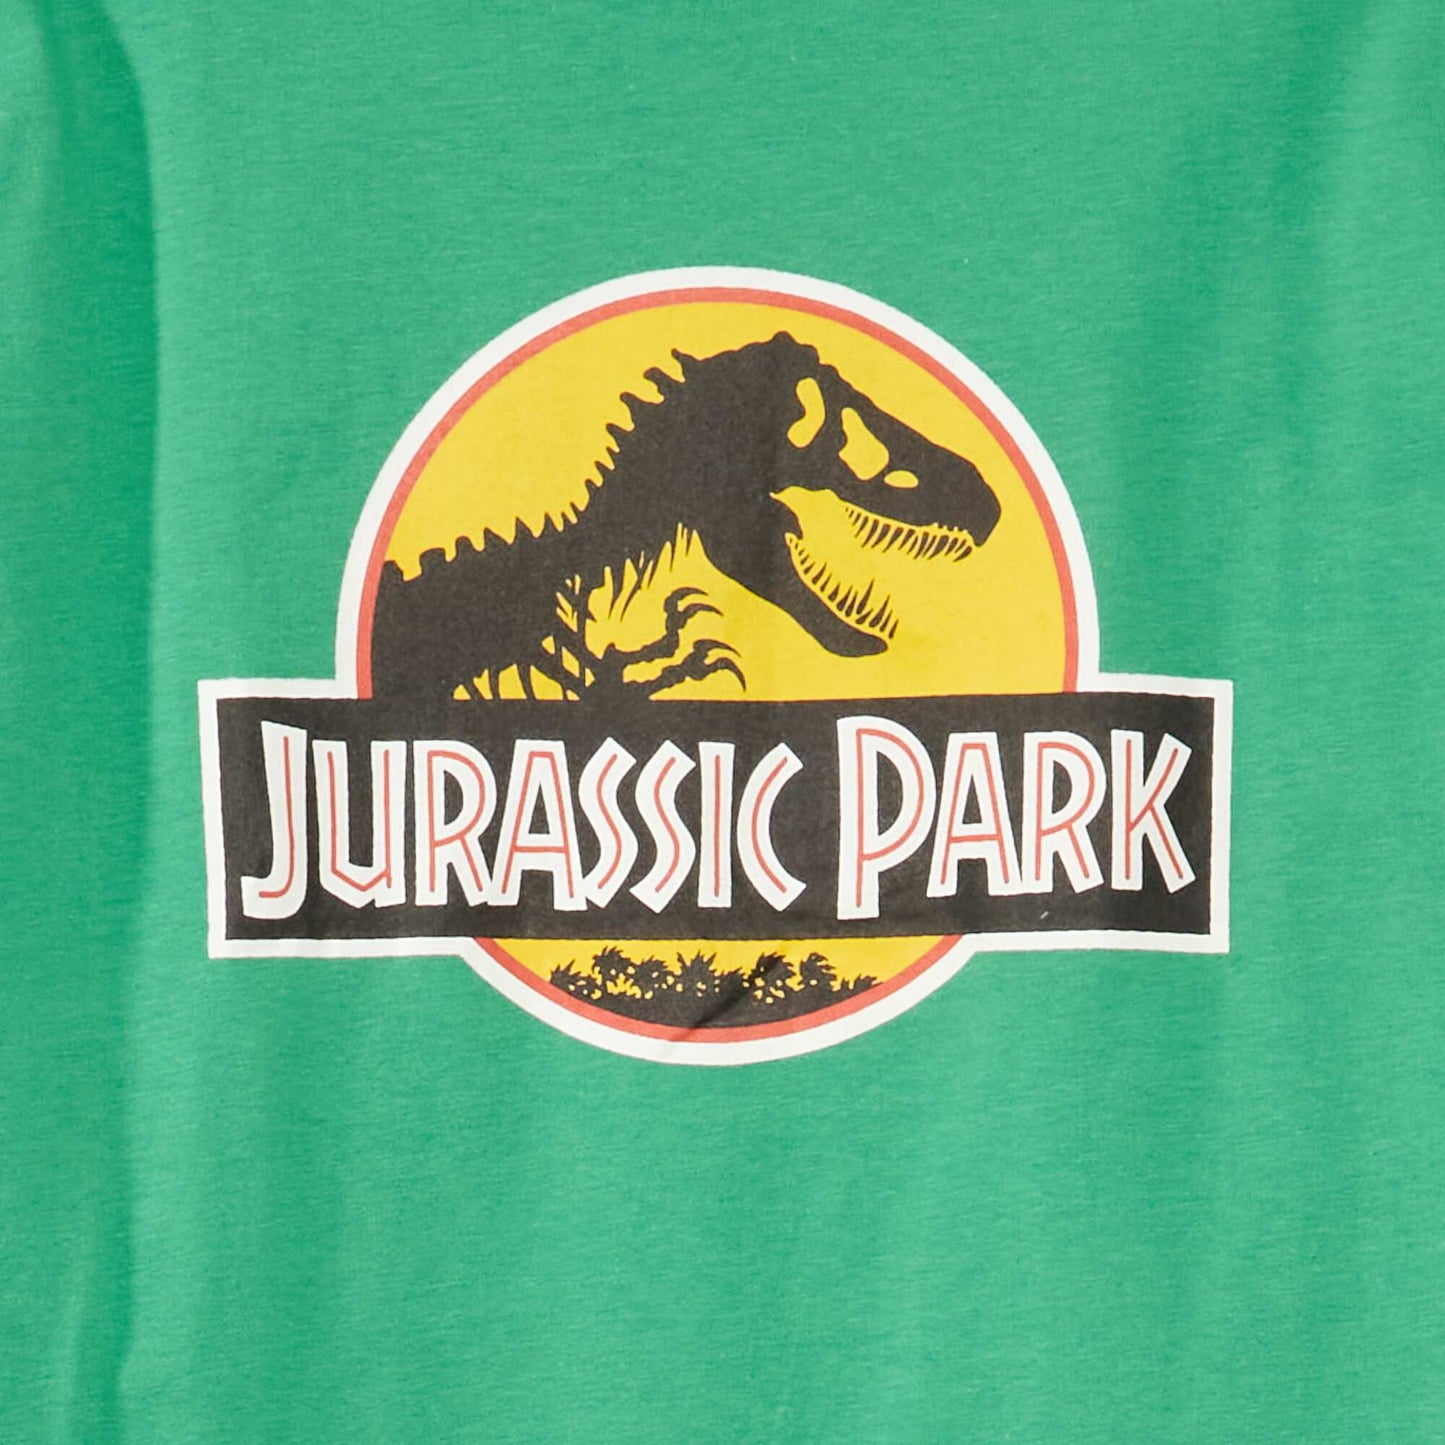 T-shirt manches longues 'Jurassic Park' Vert